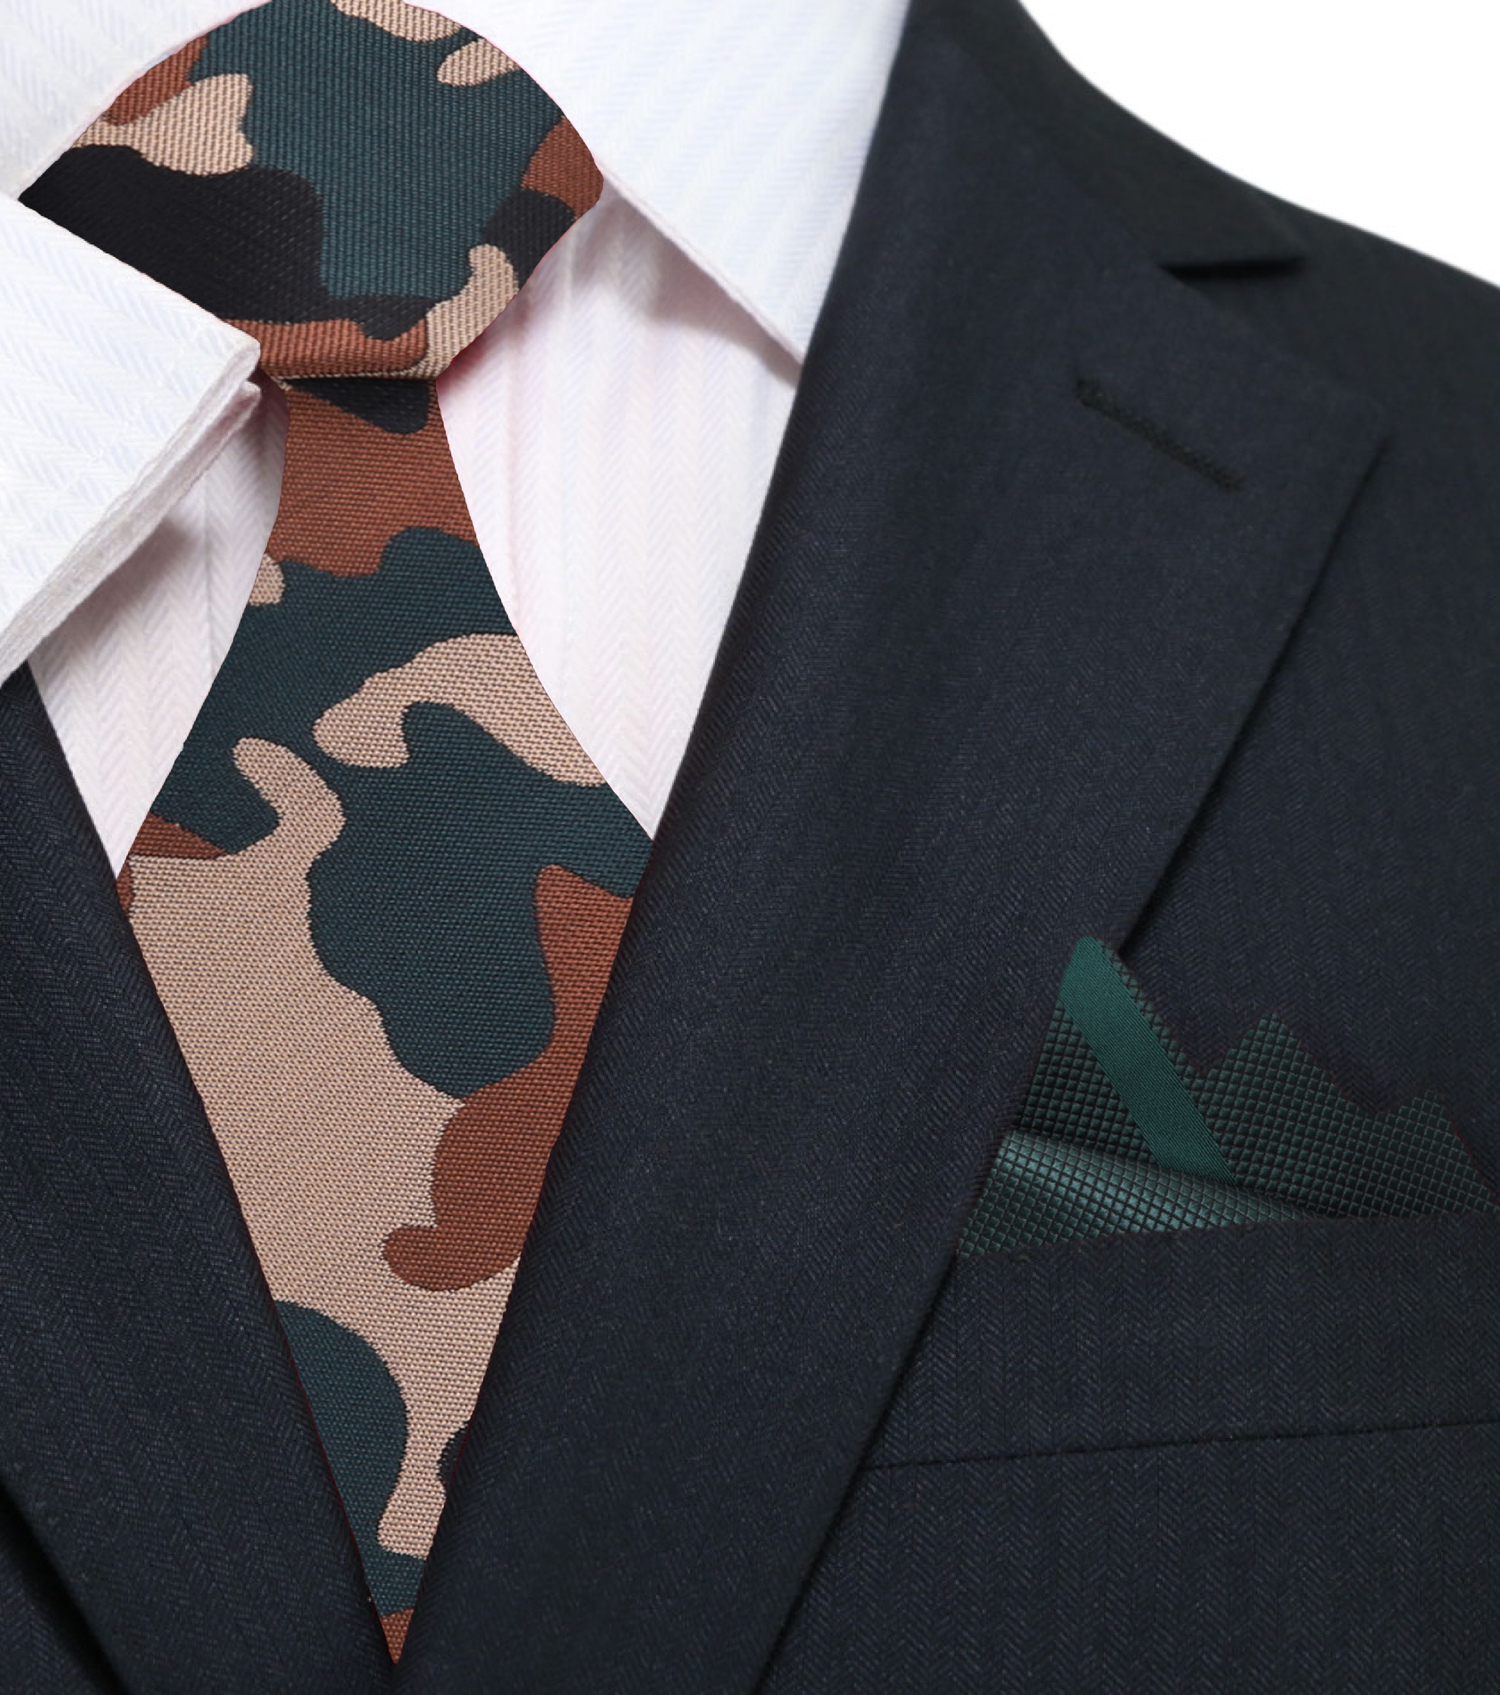 Brown, Black, Green Camouflage Necktie and Dark Green Necktie